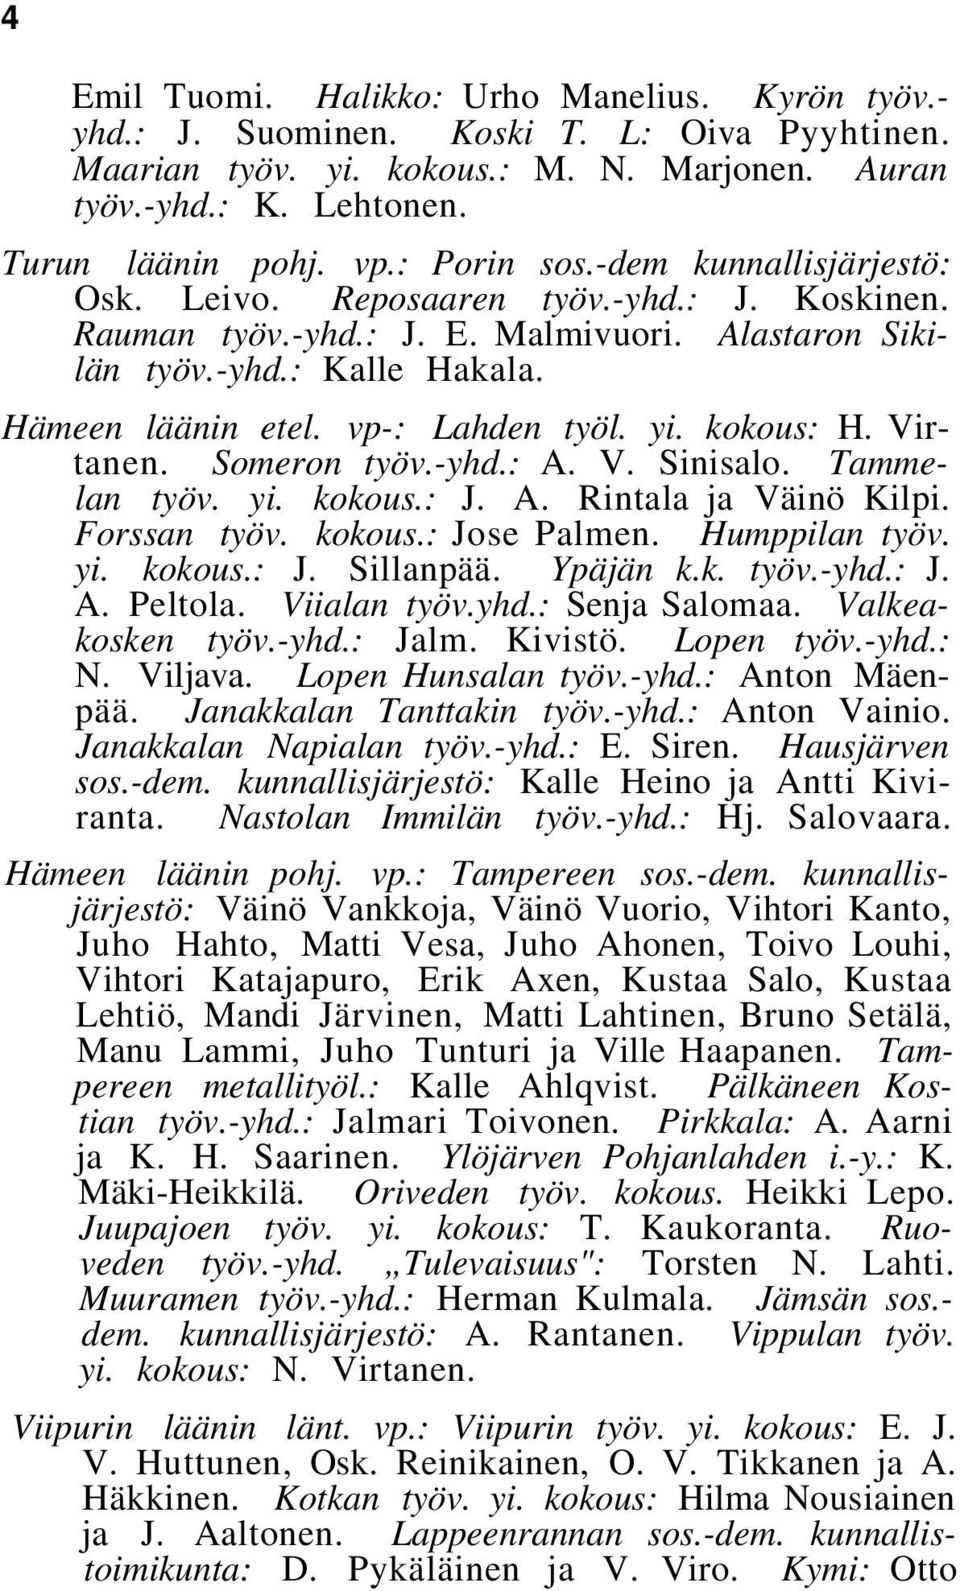 vp-: Lahden työl. yi. kokous: H. Virtanen. Someron työv.-yhd.: A. V. Sinisalo. Tammelan työv. yi. kokous.: J. A. Rintala ja Väinö Kilpi. Forssan työv. kokous.: Jose Palmen. Humppilan työv. yi. kokous.: J. Sillanpää.